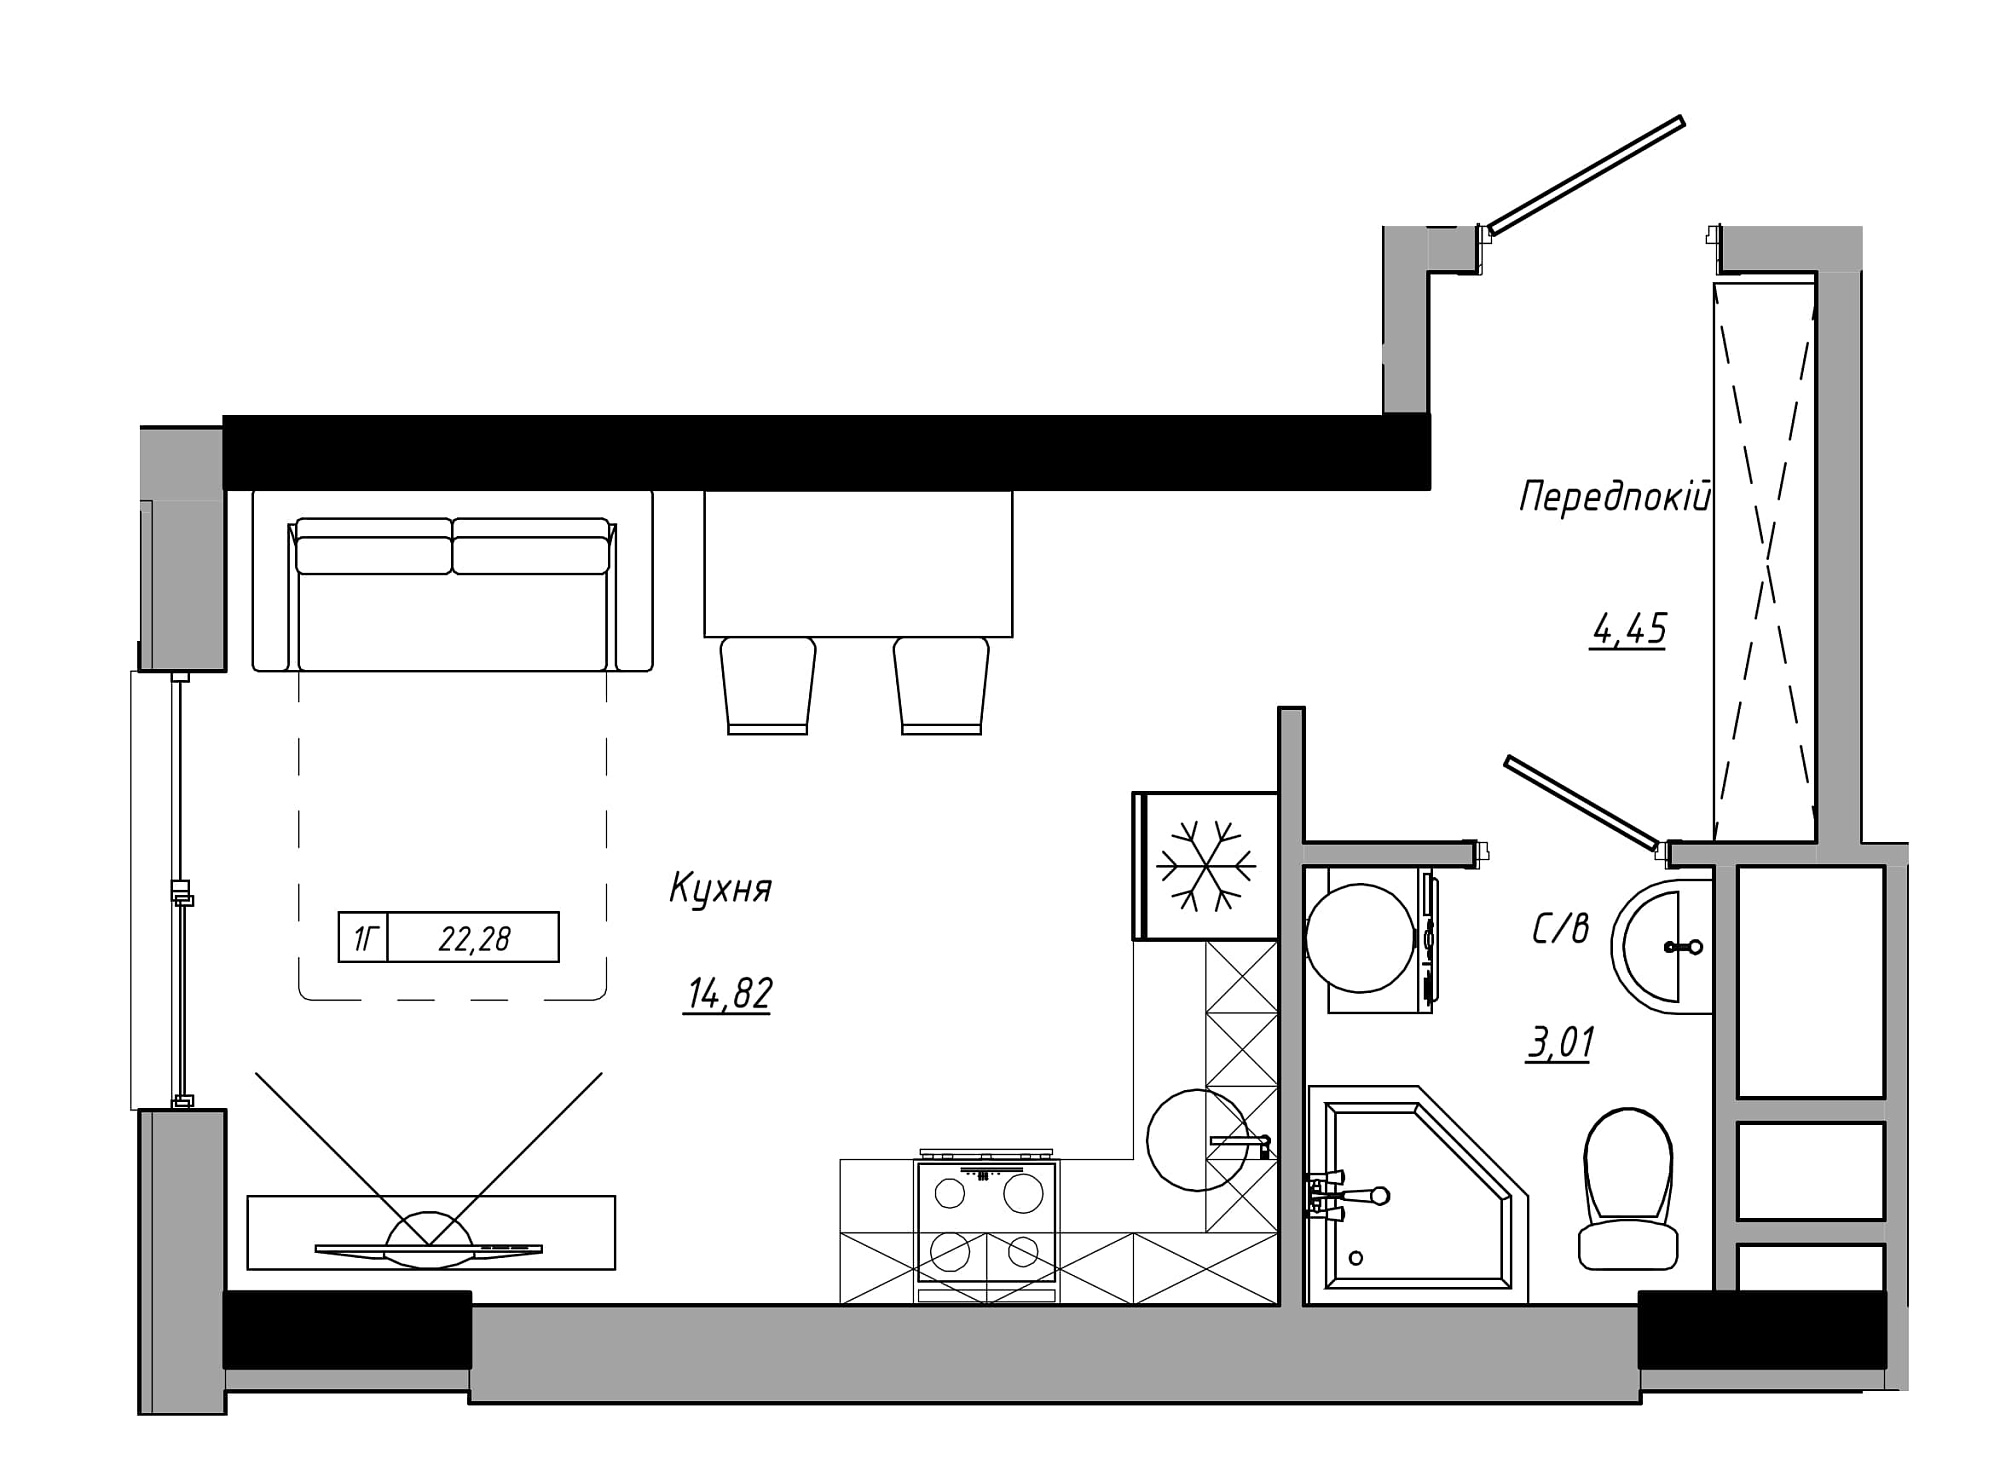 Планування Smart-квартира площею 22.28м2, AB-21-07/00005.